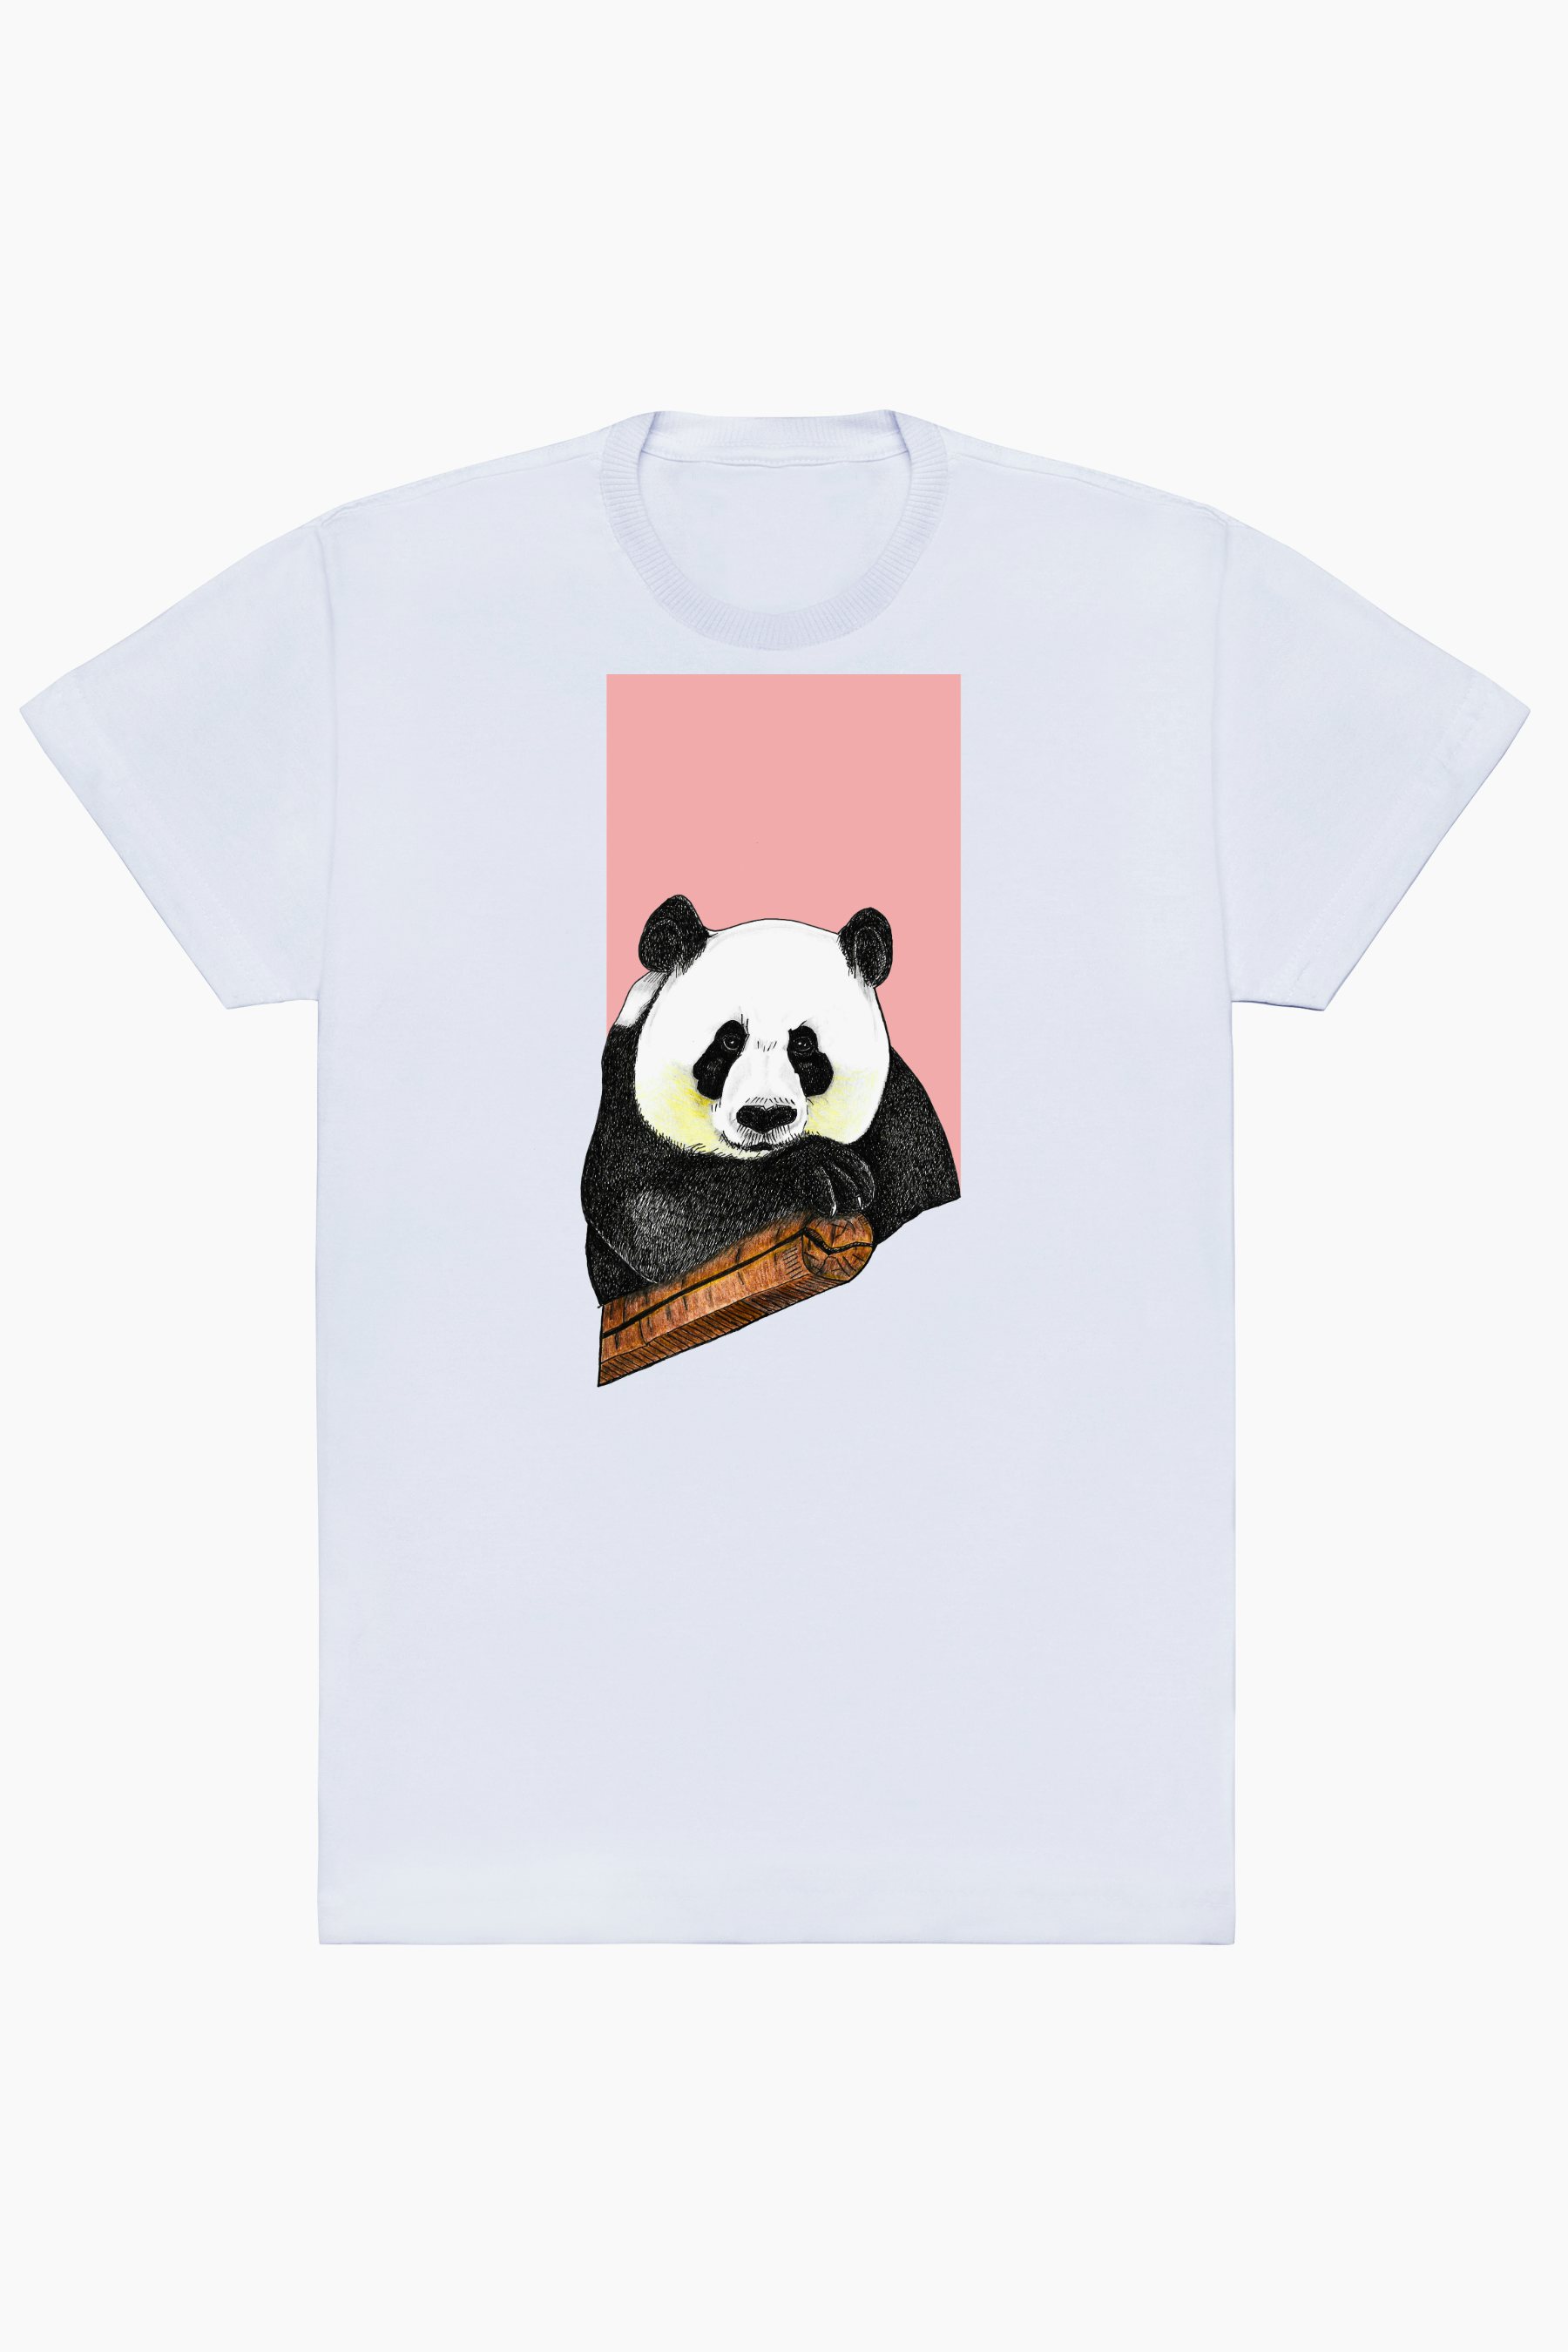 Urso Panda: o símbolo e o espírito animal da China - China Vistos